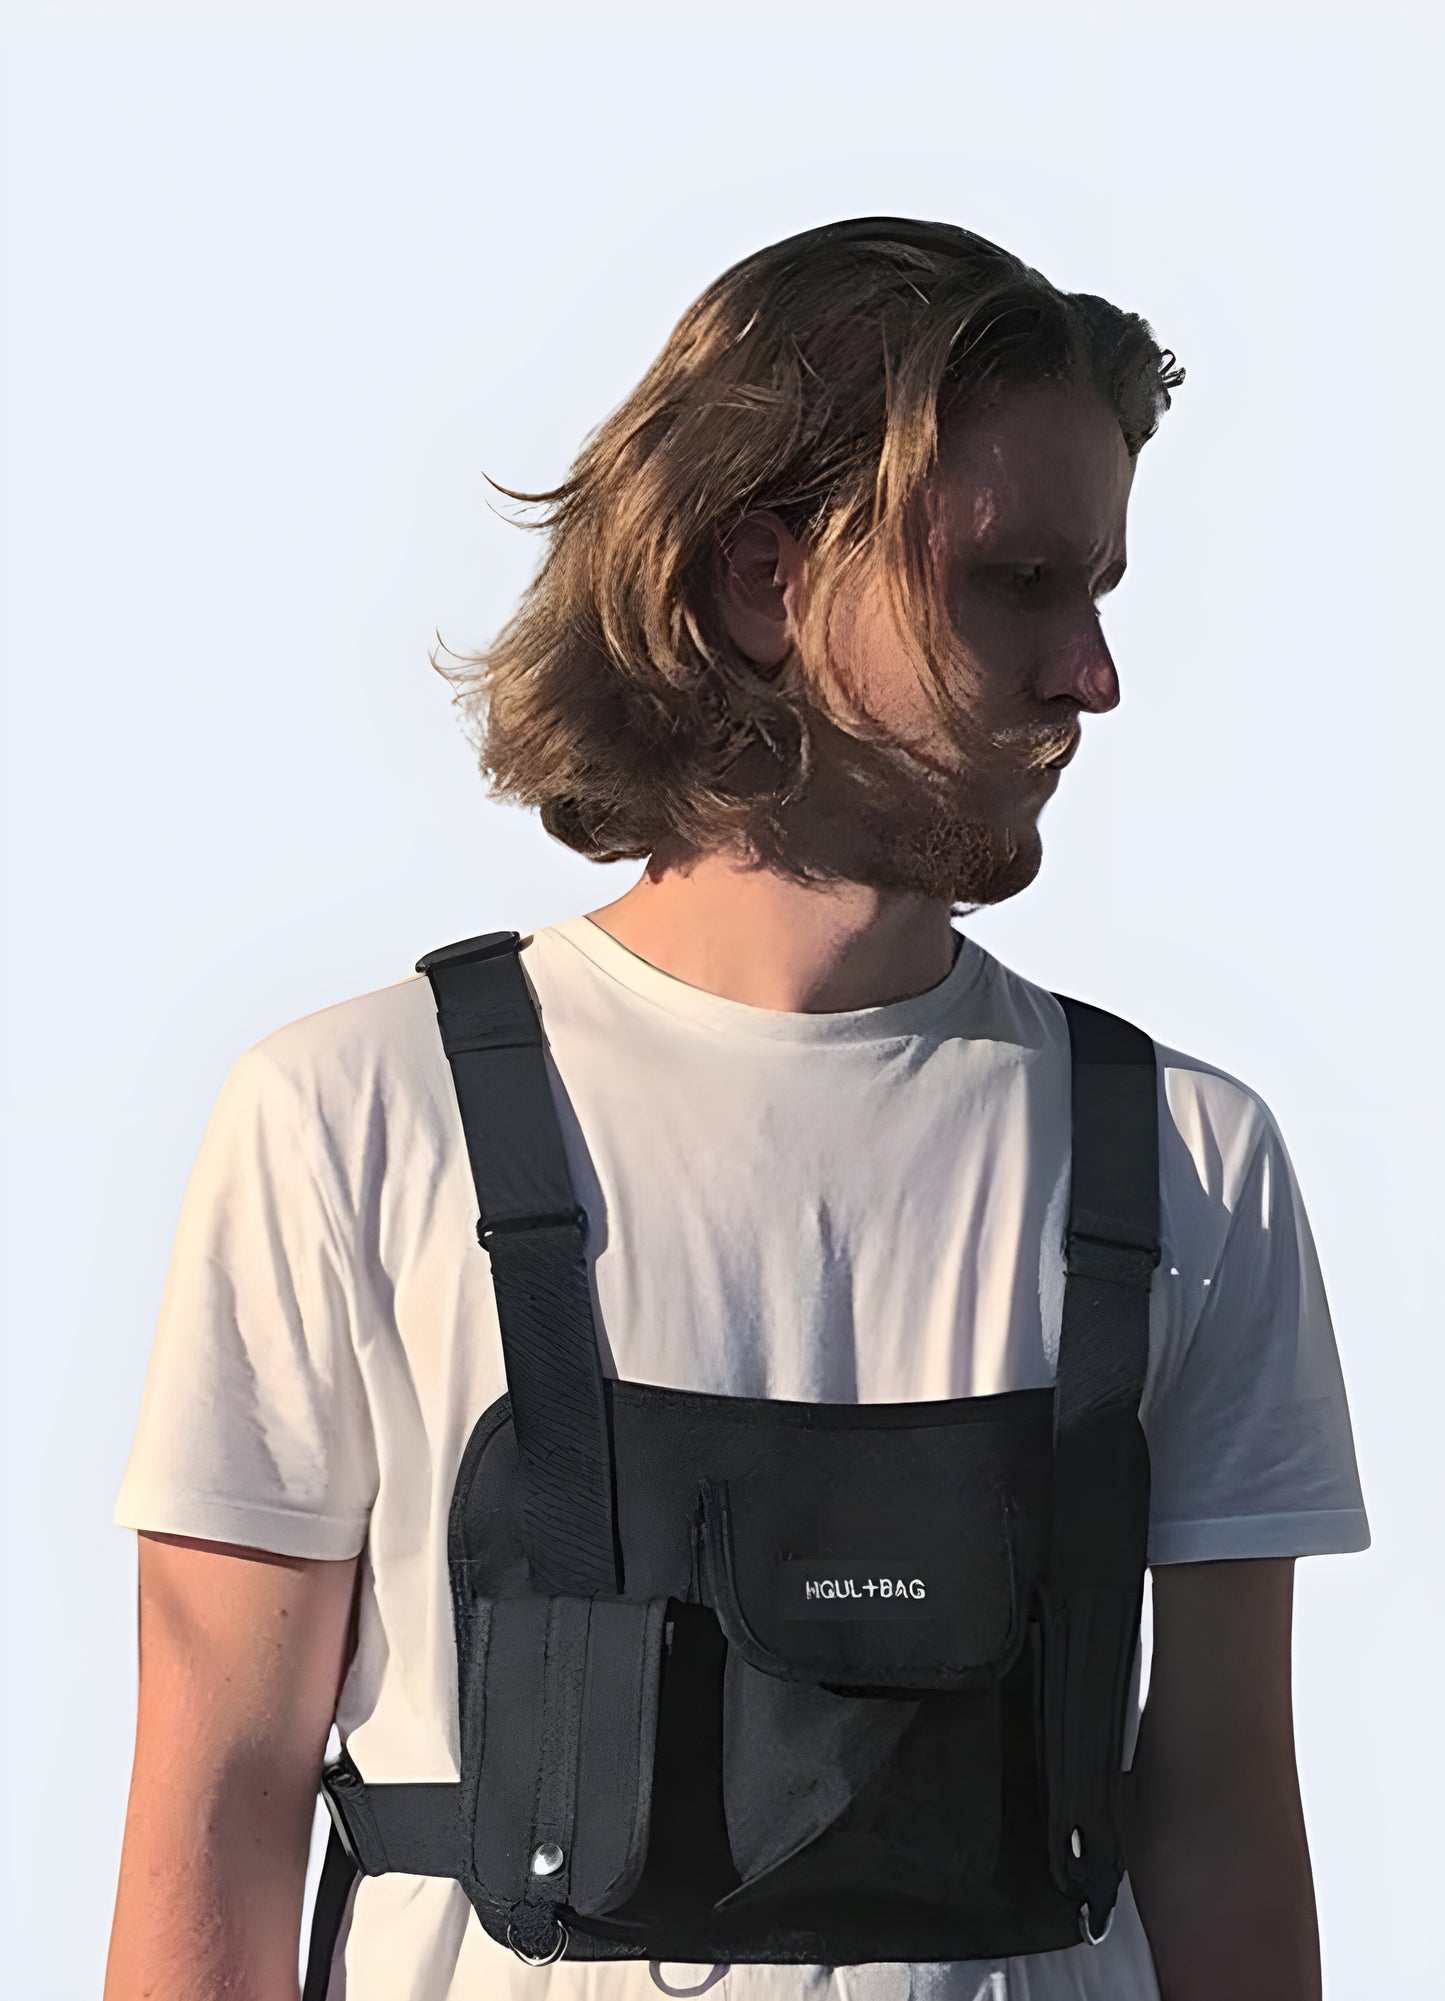 Tactical chest bag adjustable reinforced straps.